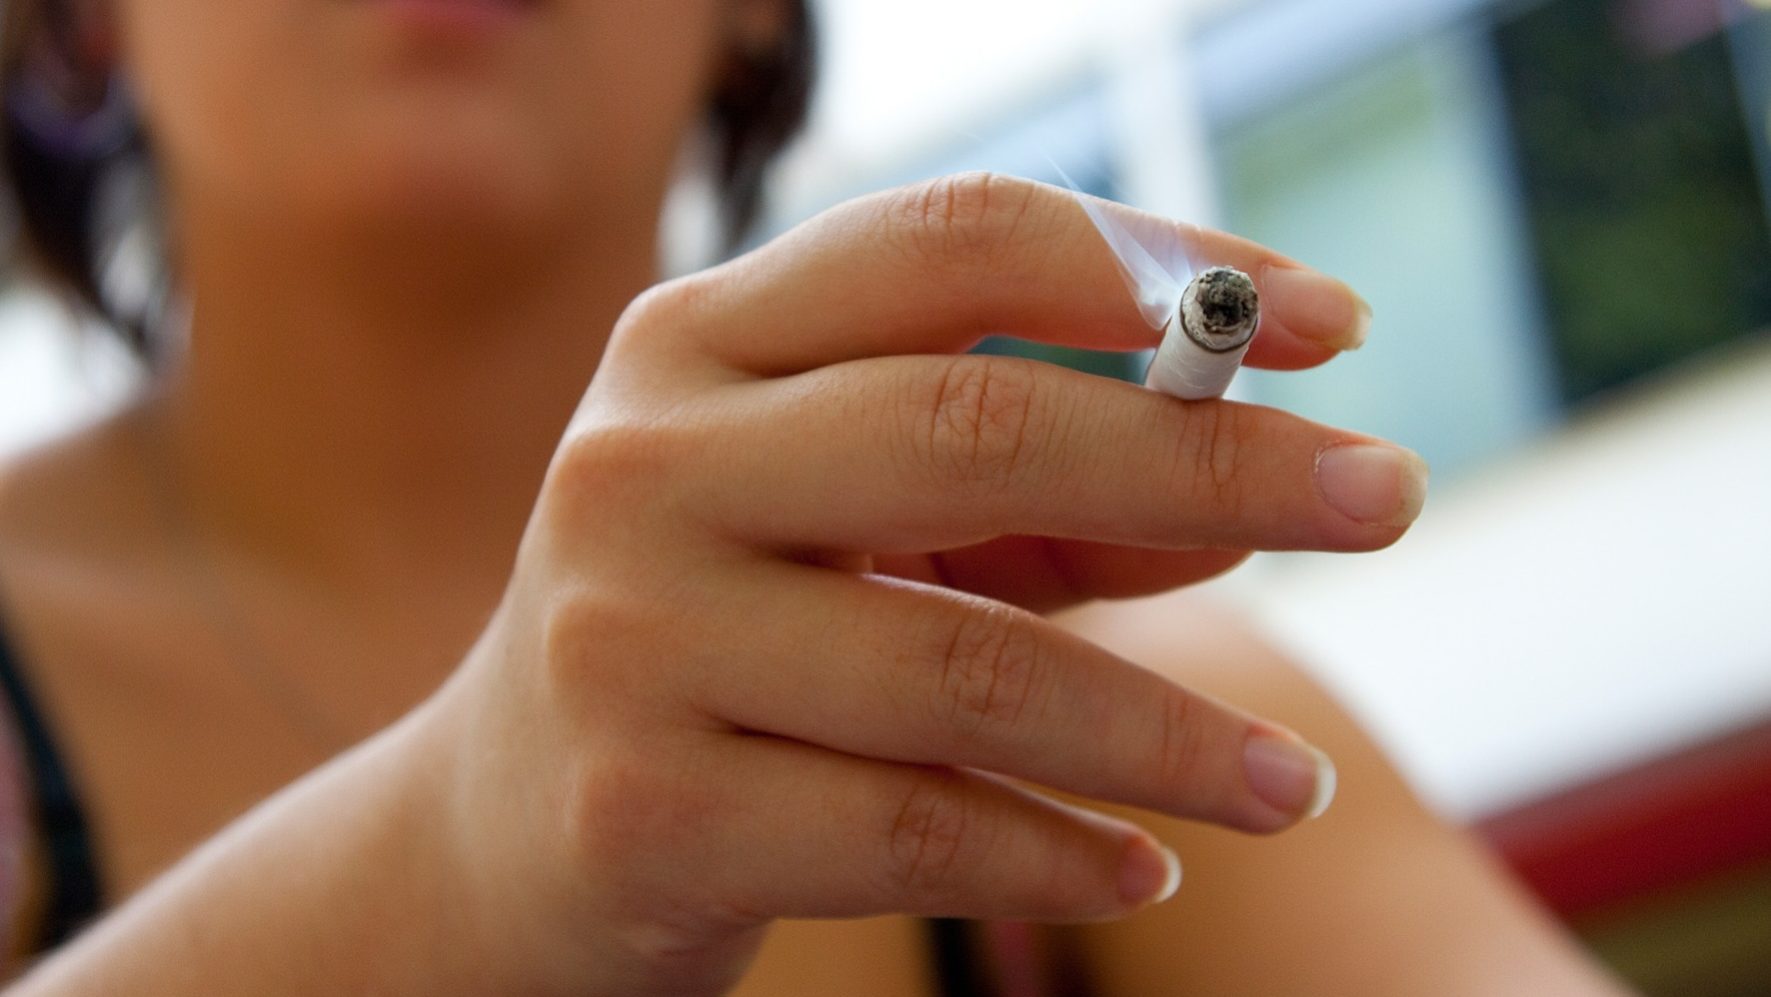 Nove em cada dez adolescentes que tentam comprar cigarros não são impedidos atualmente no Brasil. Além disso, a grande maioria (cerca de 70%) desses jovens faz isto com frequência e em estabelecimentos comerciais autorizados.